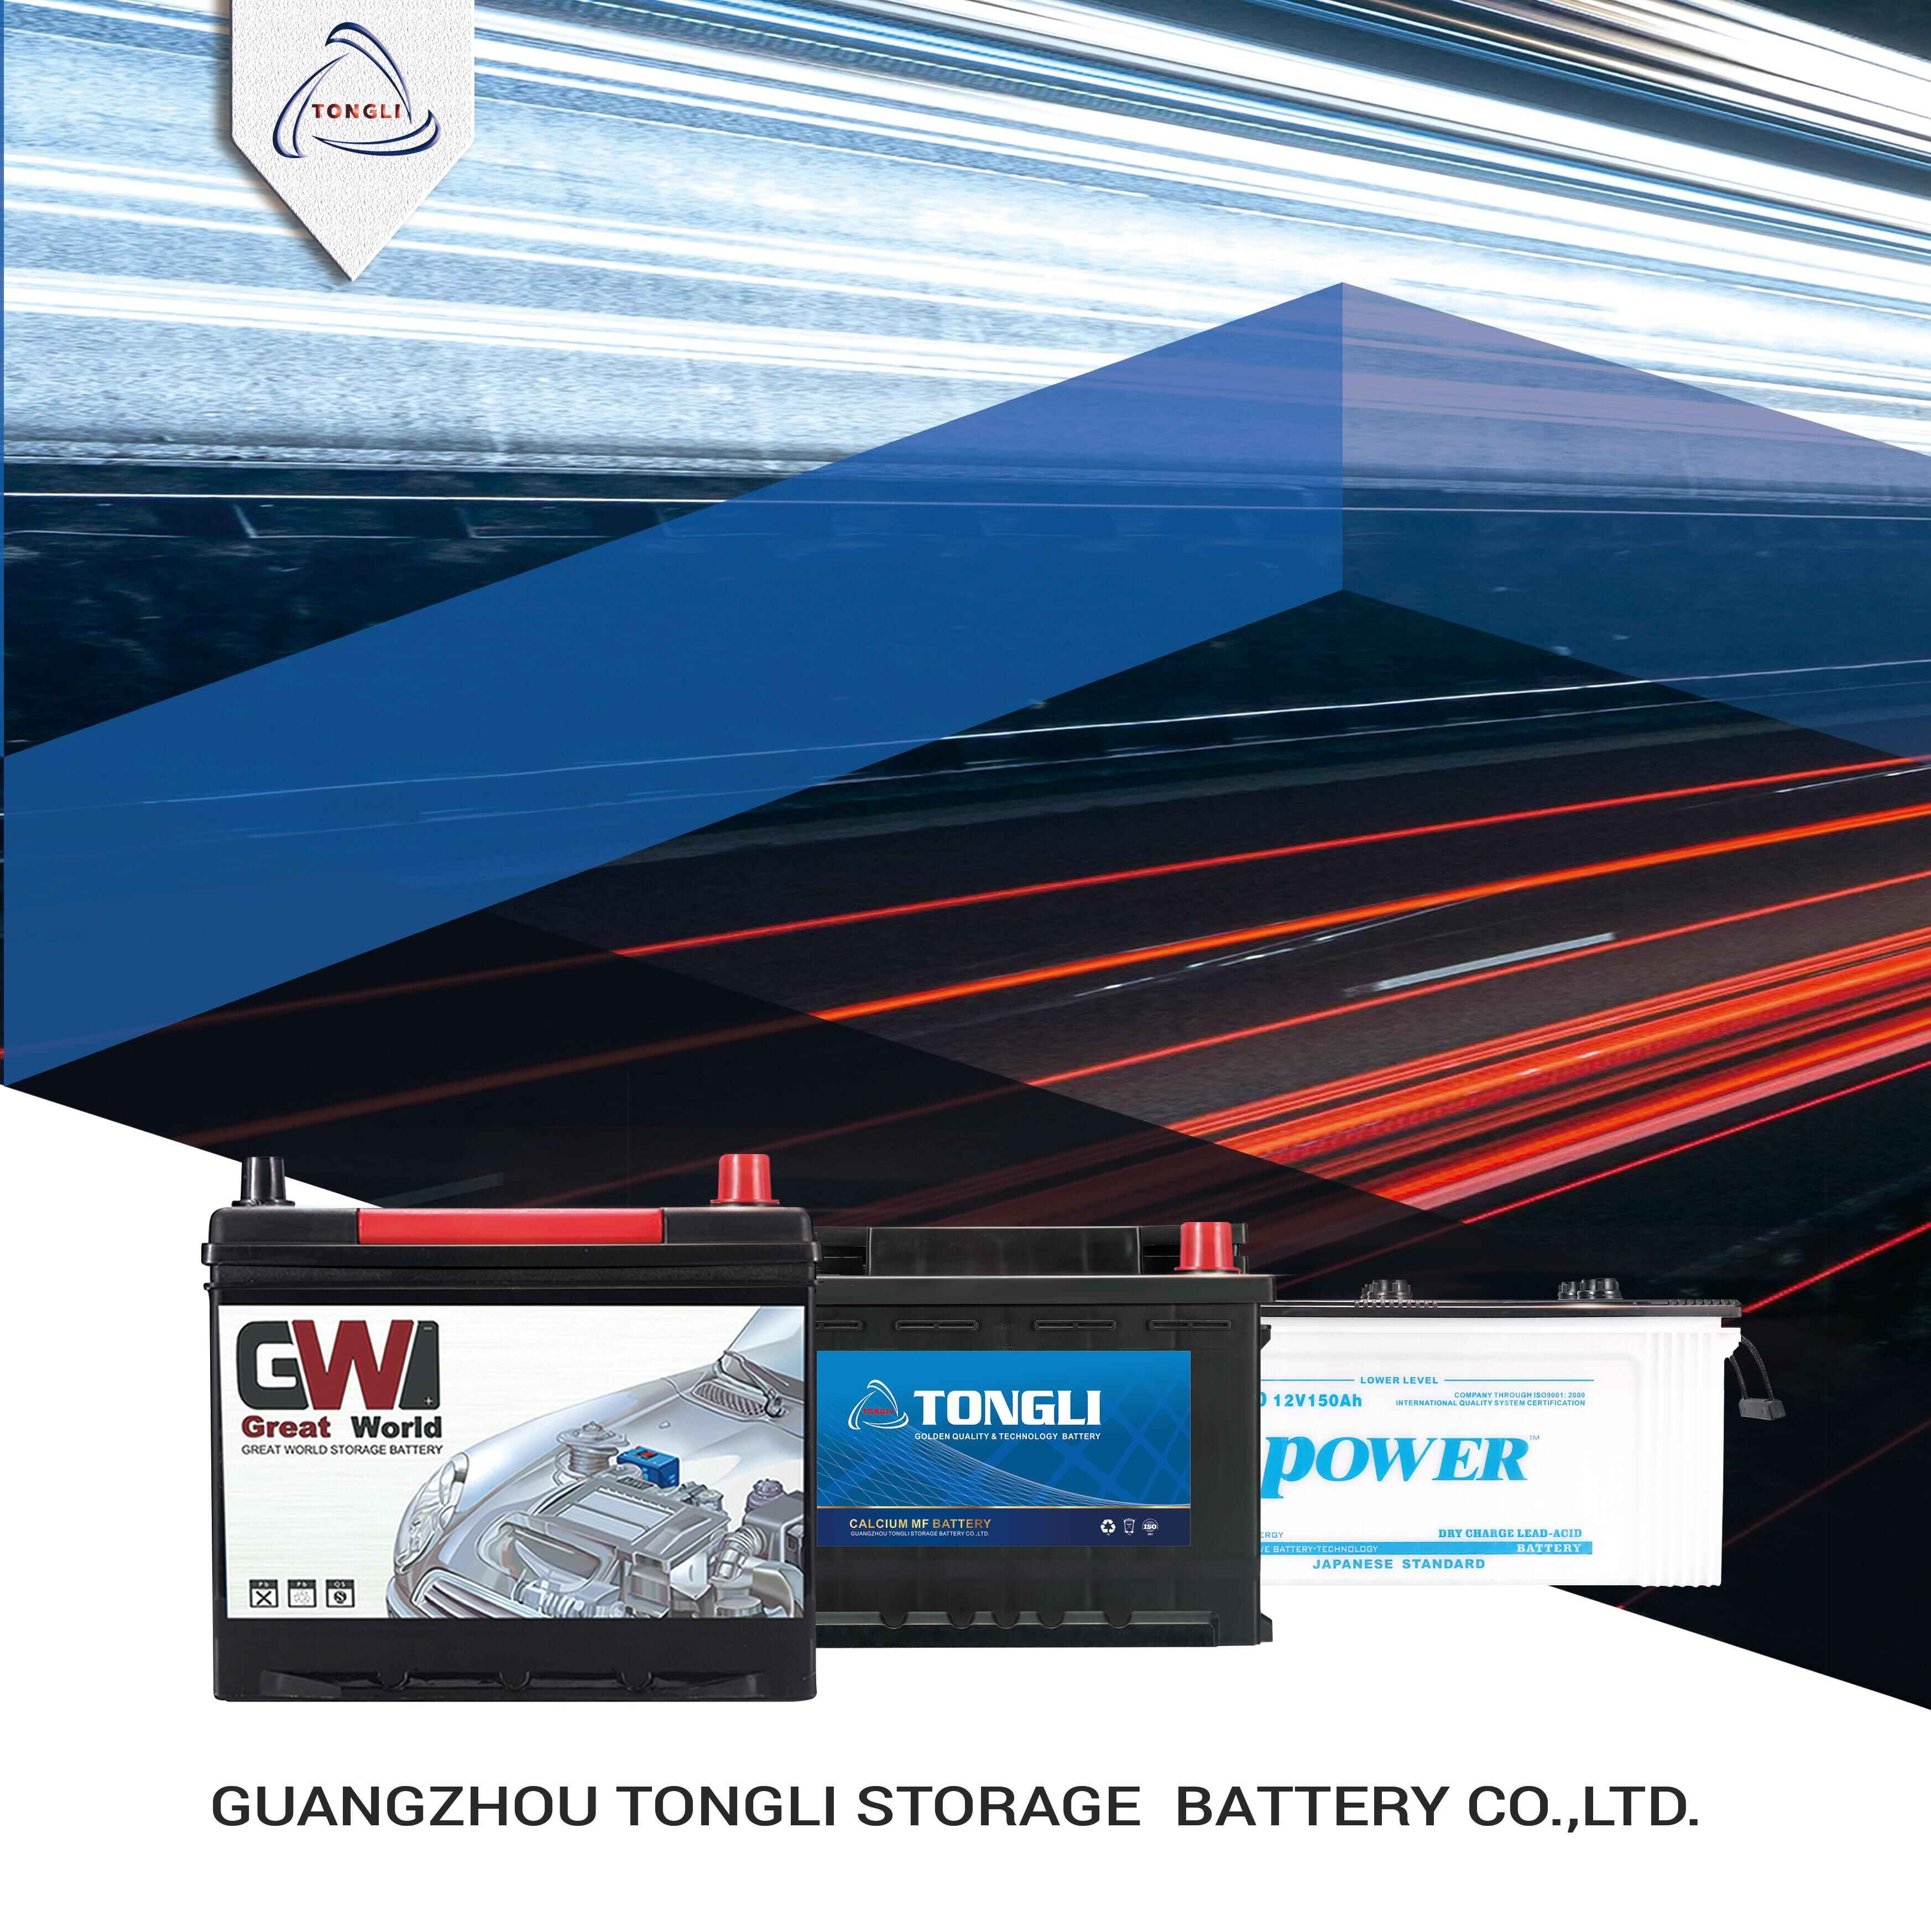 POWER Brand Car Battery 12V 45Ah Maintenance Free Starter Stop Battery